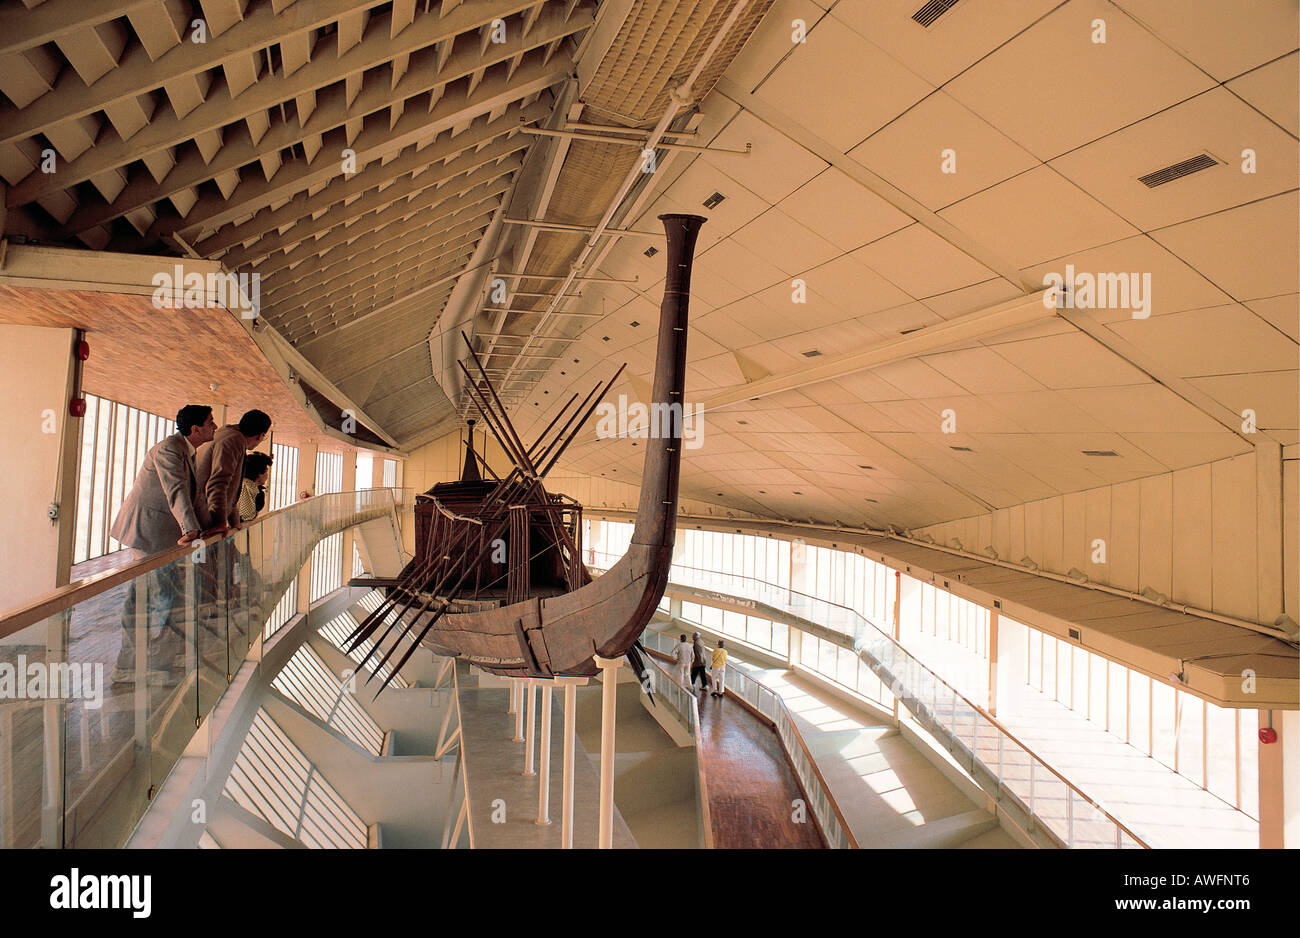 Cheope barca solare all'interno aria condizionata museum vicino a La Grande Piramide di Giza Egitto Cairo Foto Stock